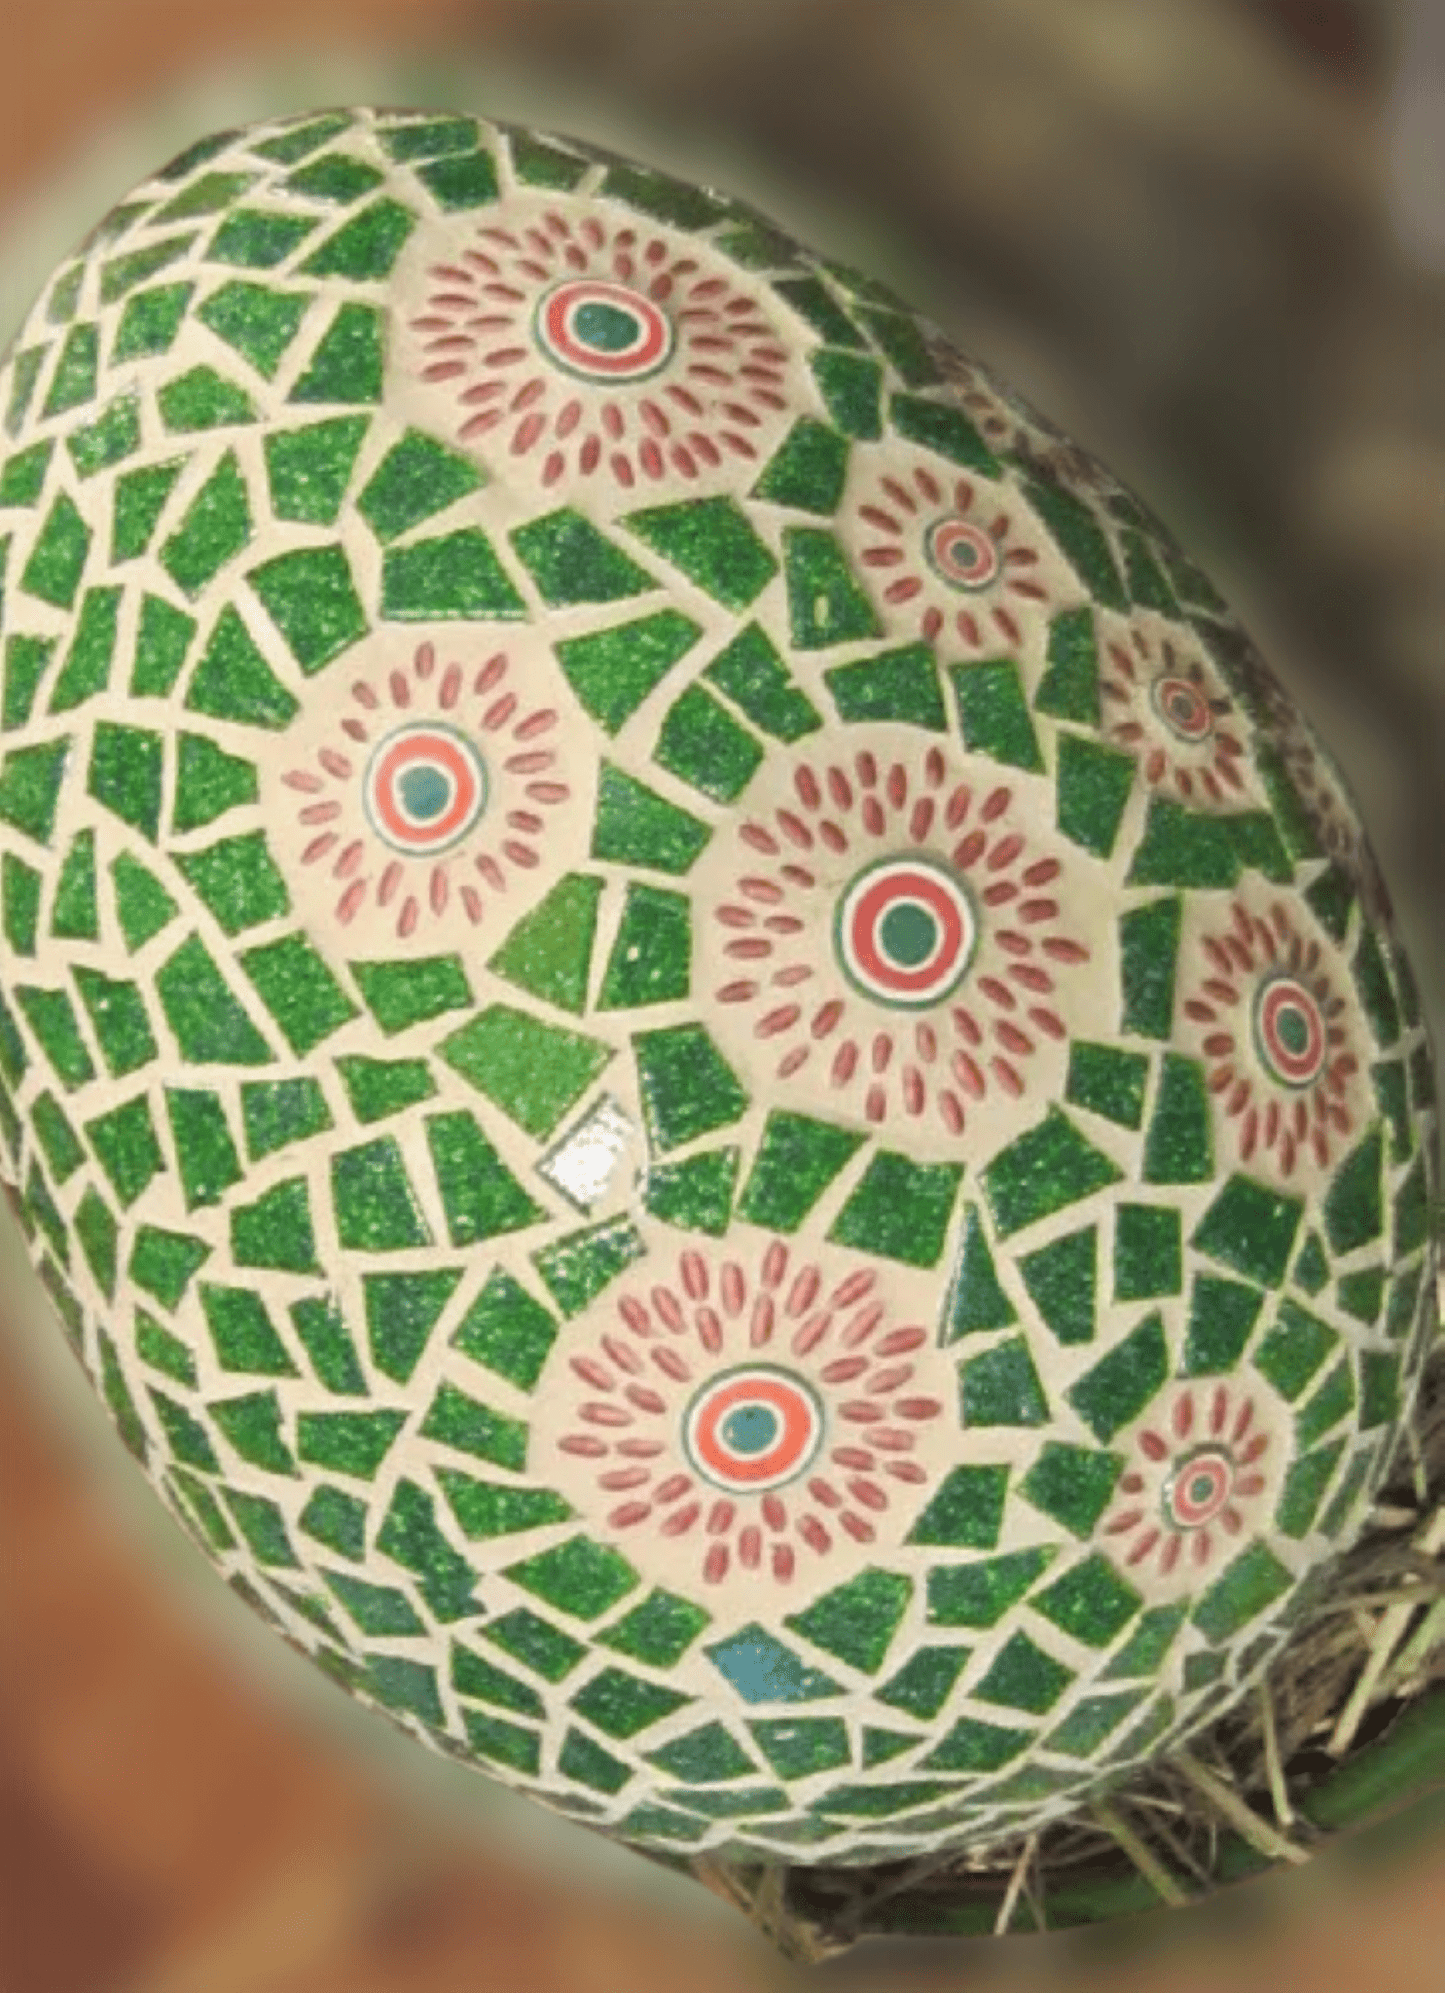 Handgemachtes Osterei grün rot 20 cm hoch - Einzelstück - Mosaikkasten blume Deko für draußen